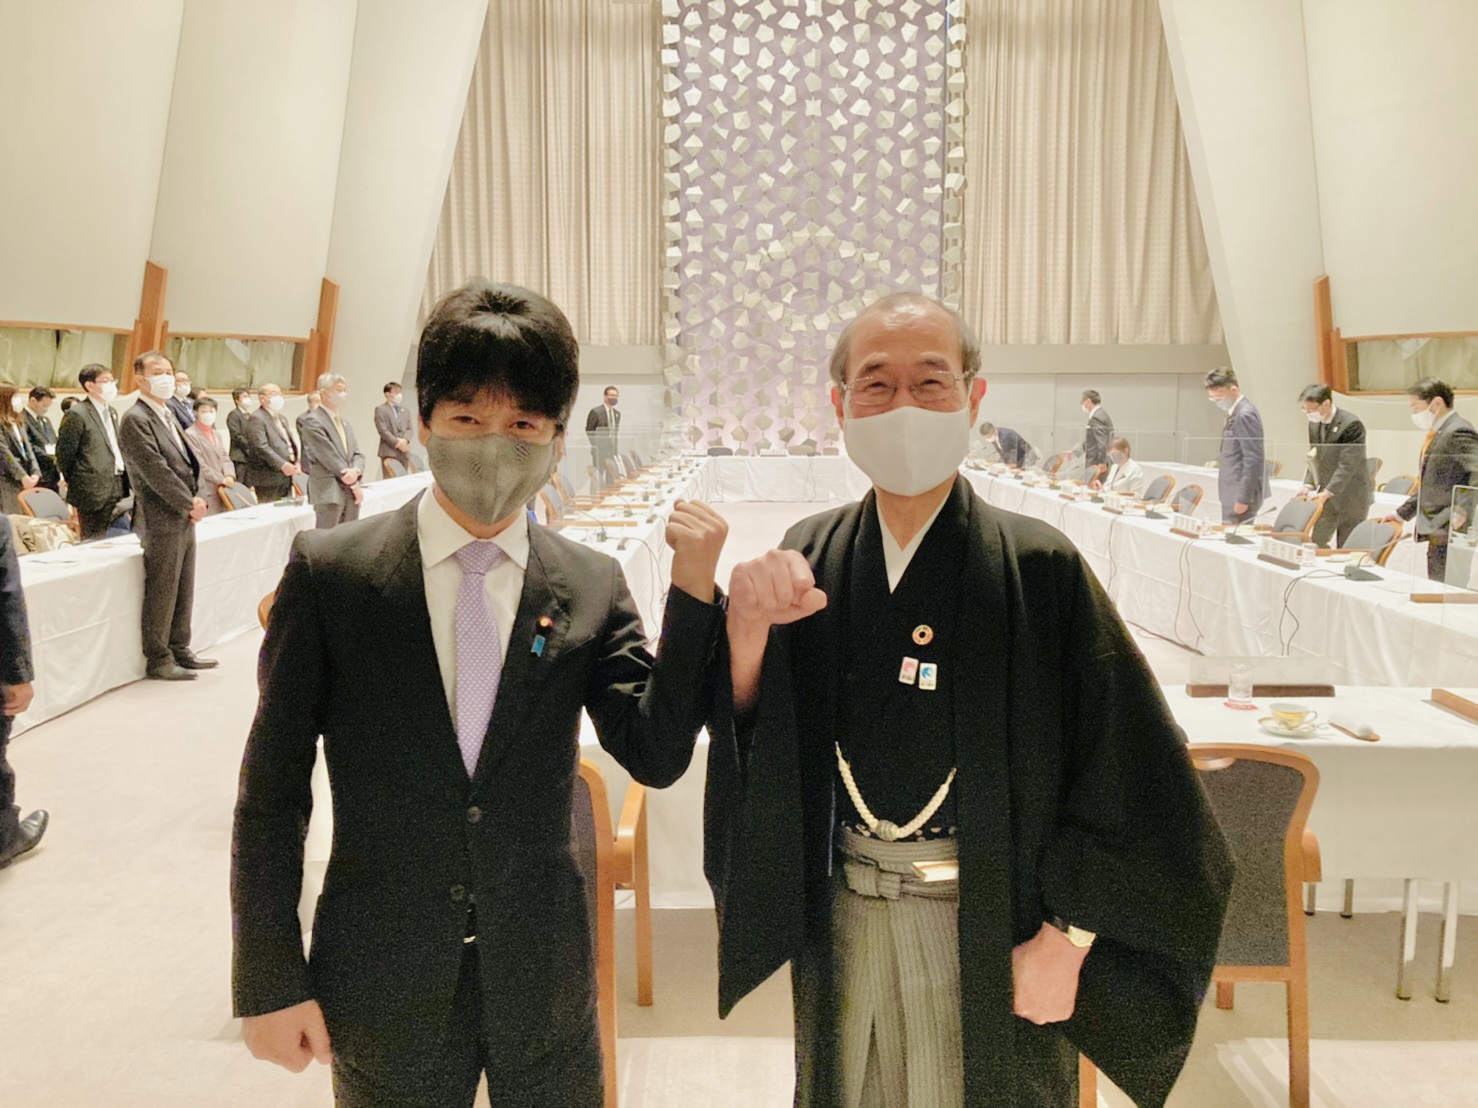 衆議院法務委員会委員による京都視察が行われました。